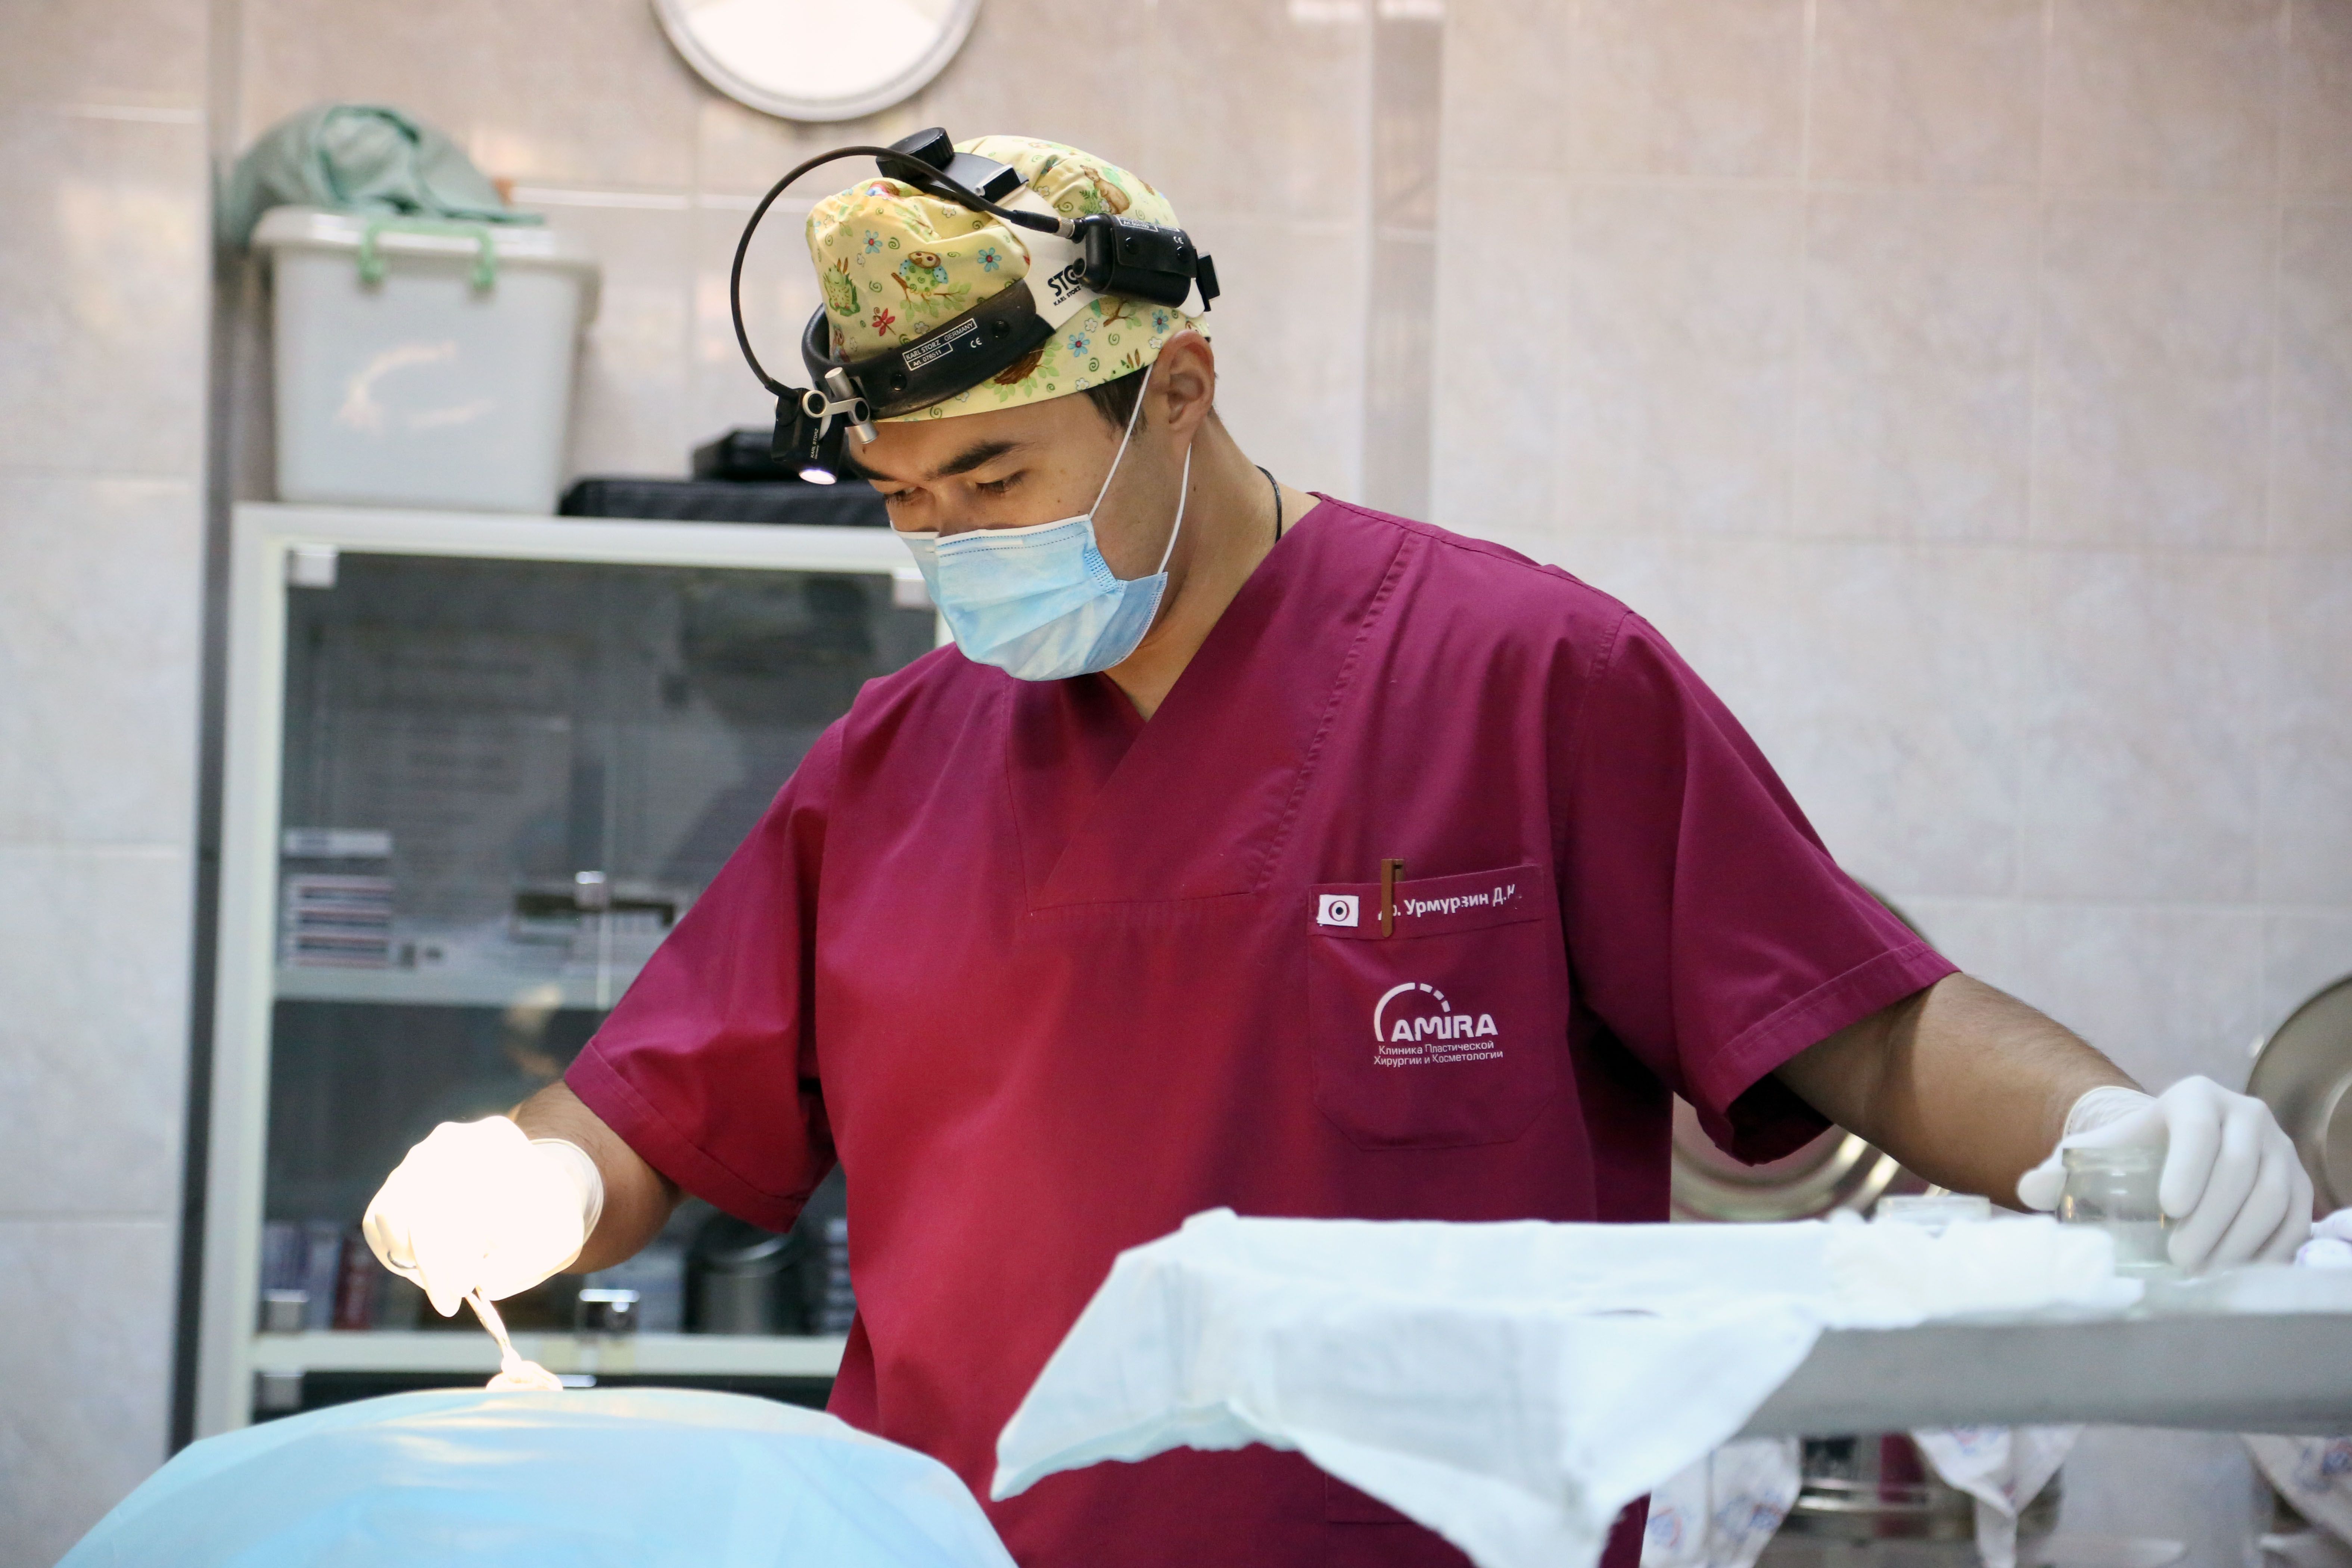 Сегодня в Казахстане, по данным за 2012 год, работают 48 квалифицированных пластических хирургов. Для страны, даже с таким небольшим населением, как в Казахстане, такое количество пластических хирургов недостаточно, считает Урмурзин. Это ситуация удивляет хирурга, ведь сама профессия считается престижной и востребованной. 